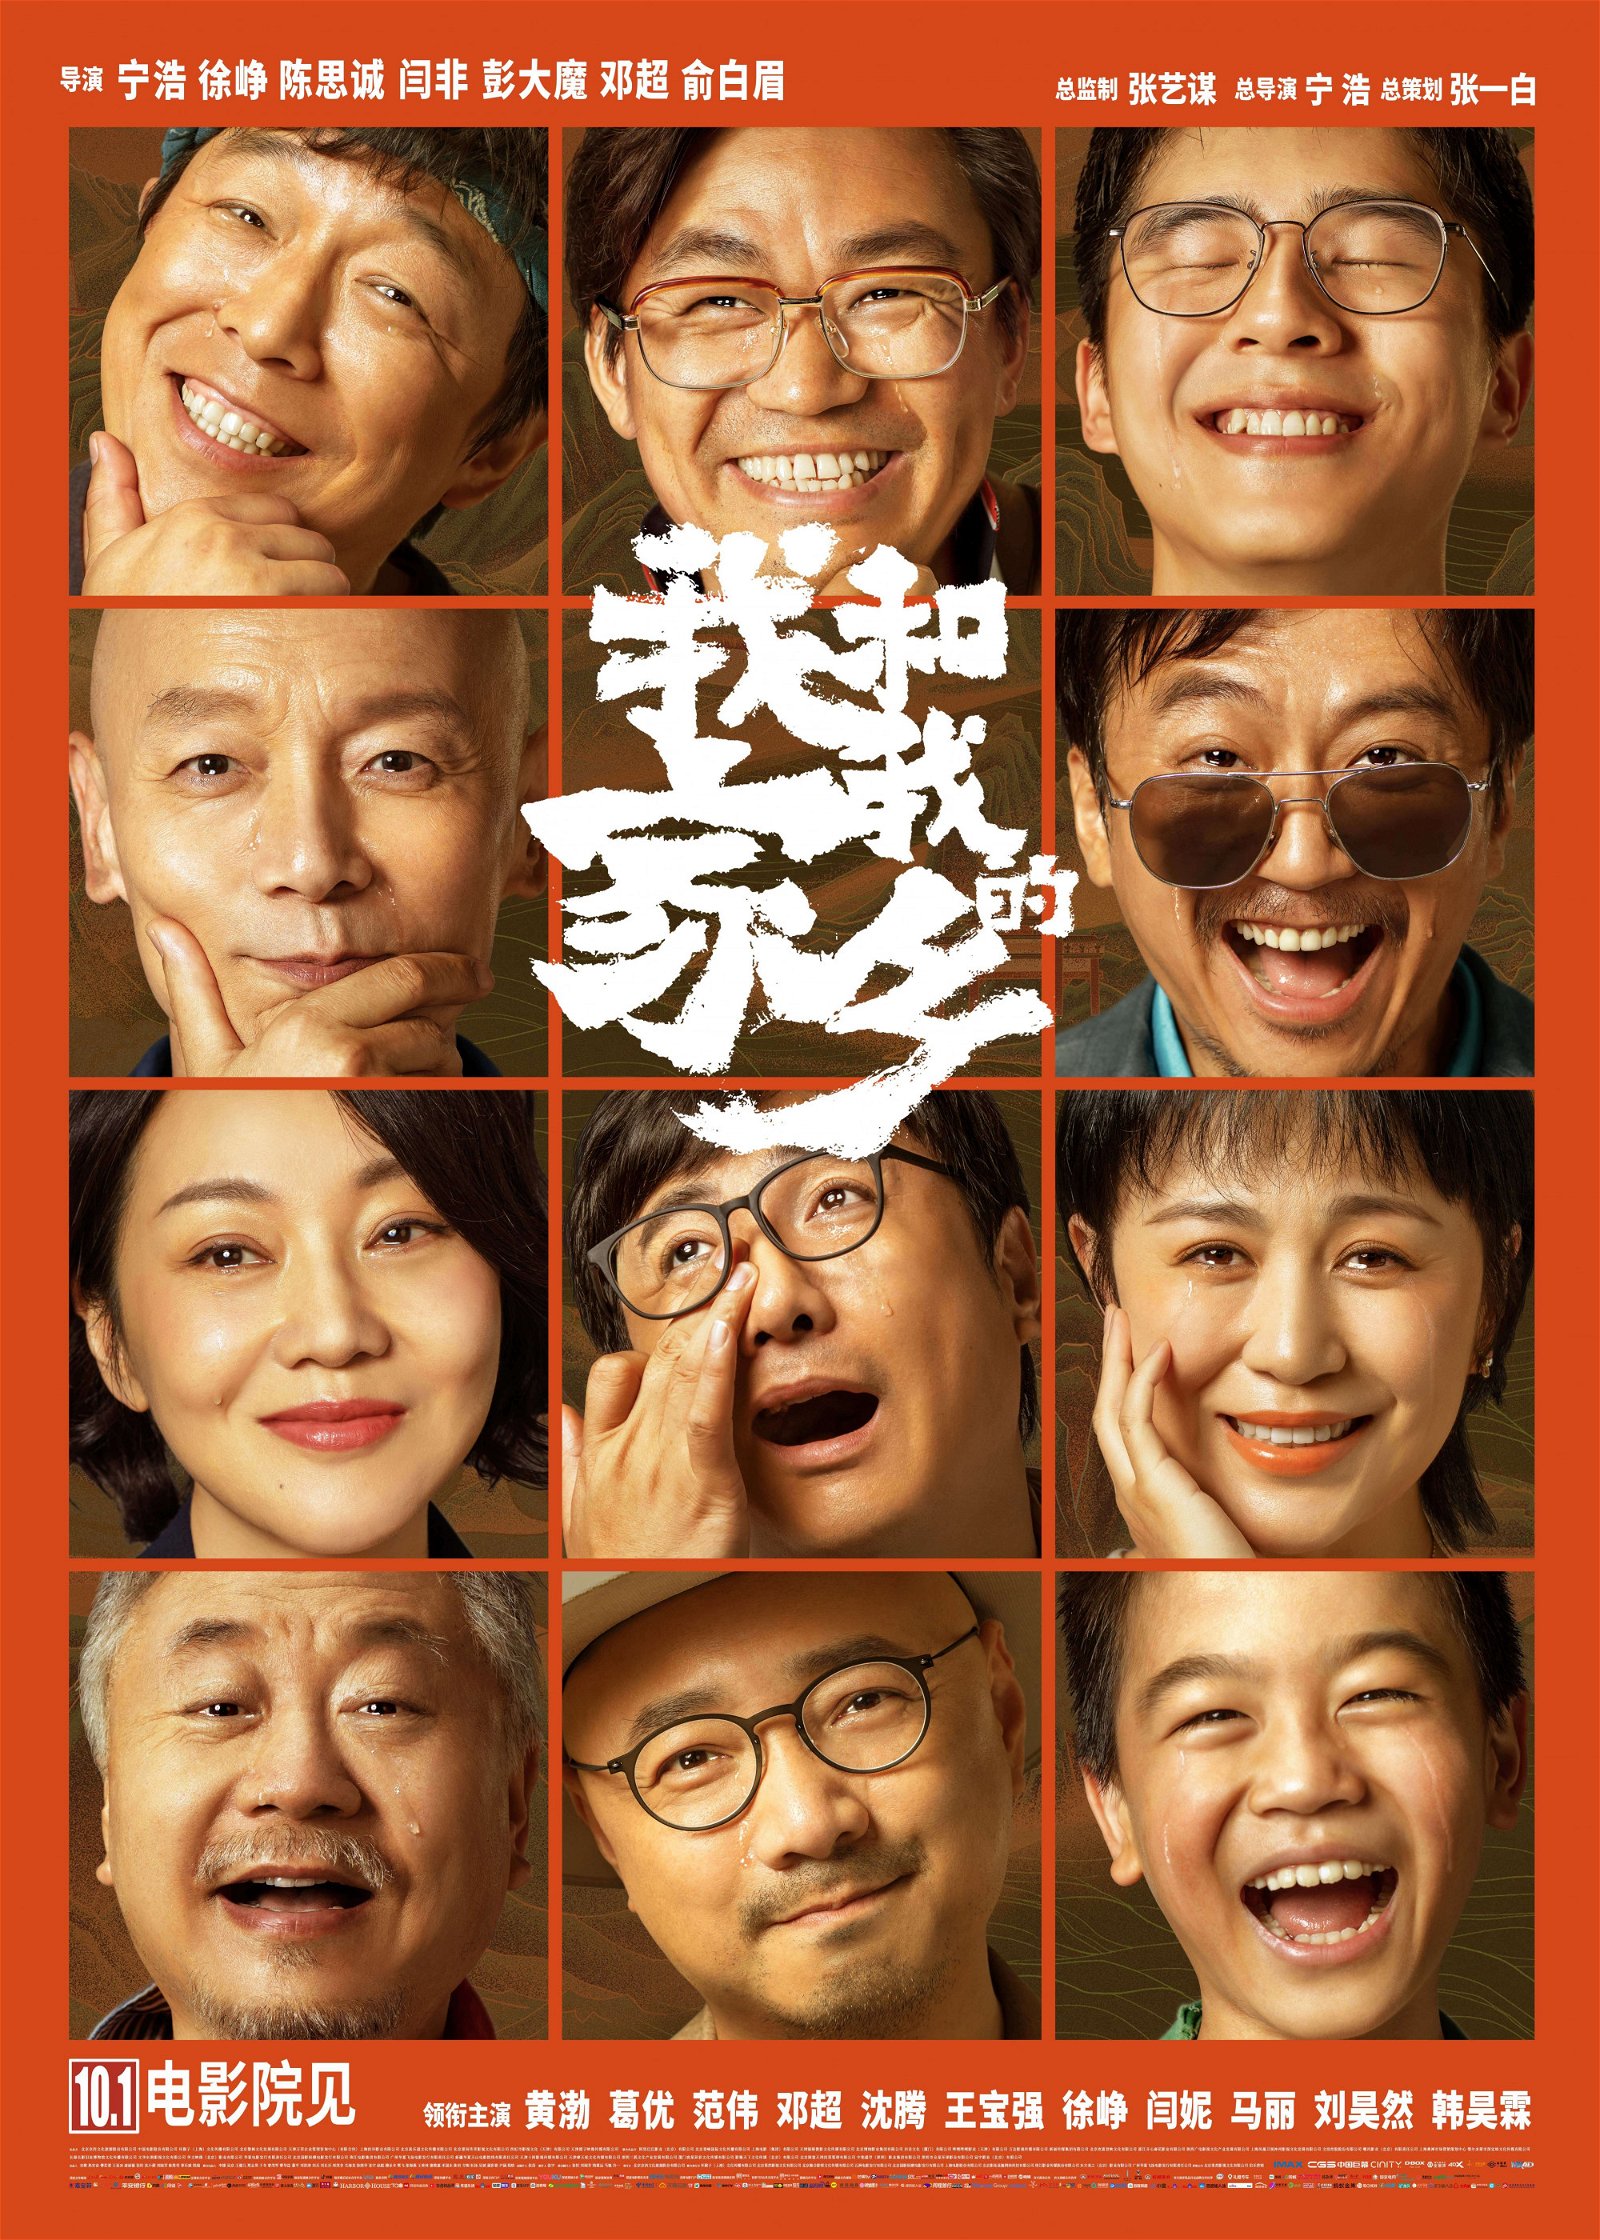 《我和我的家乡》在中国上映首日就突破2亿人民币的票房。